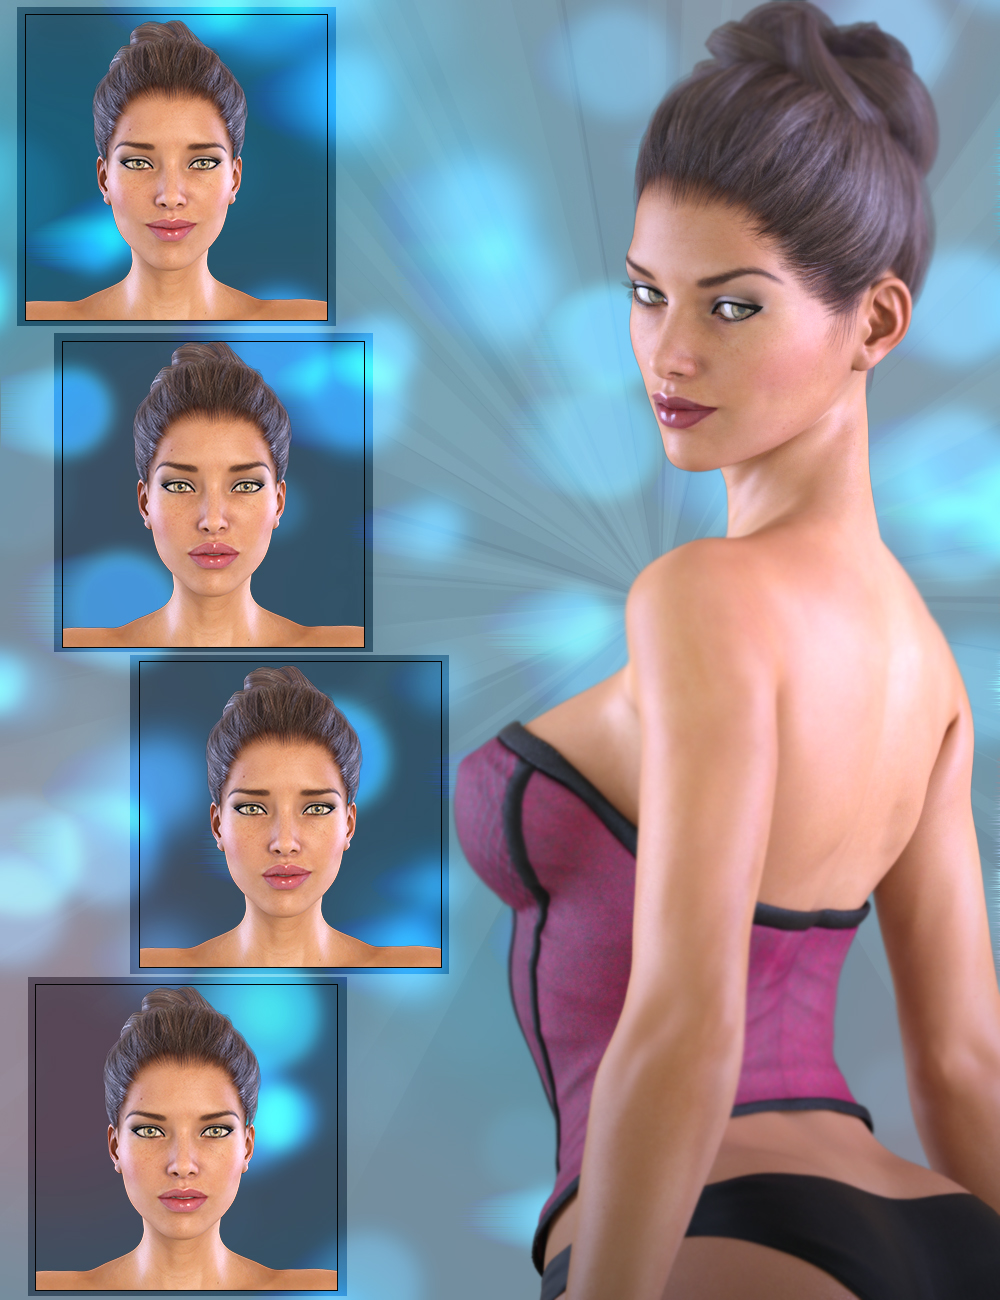 Z Subtle Expressions for Genesis 3 Female & Victoria 7 by: Zeddicuss, 3D Models by Daz 3D